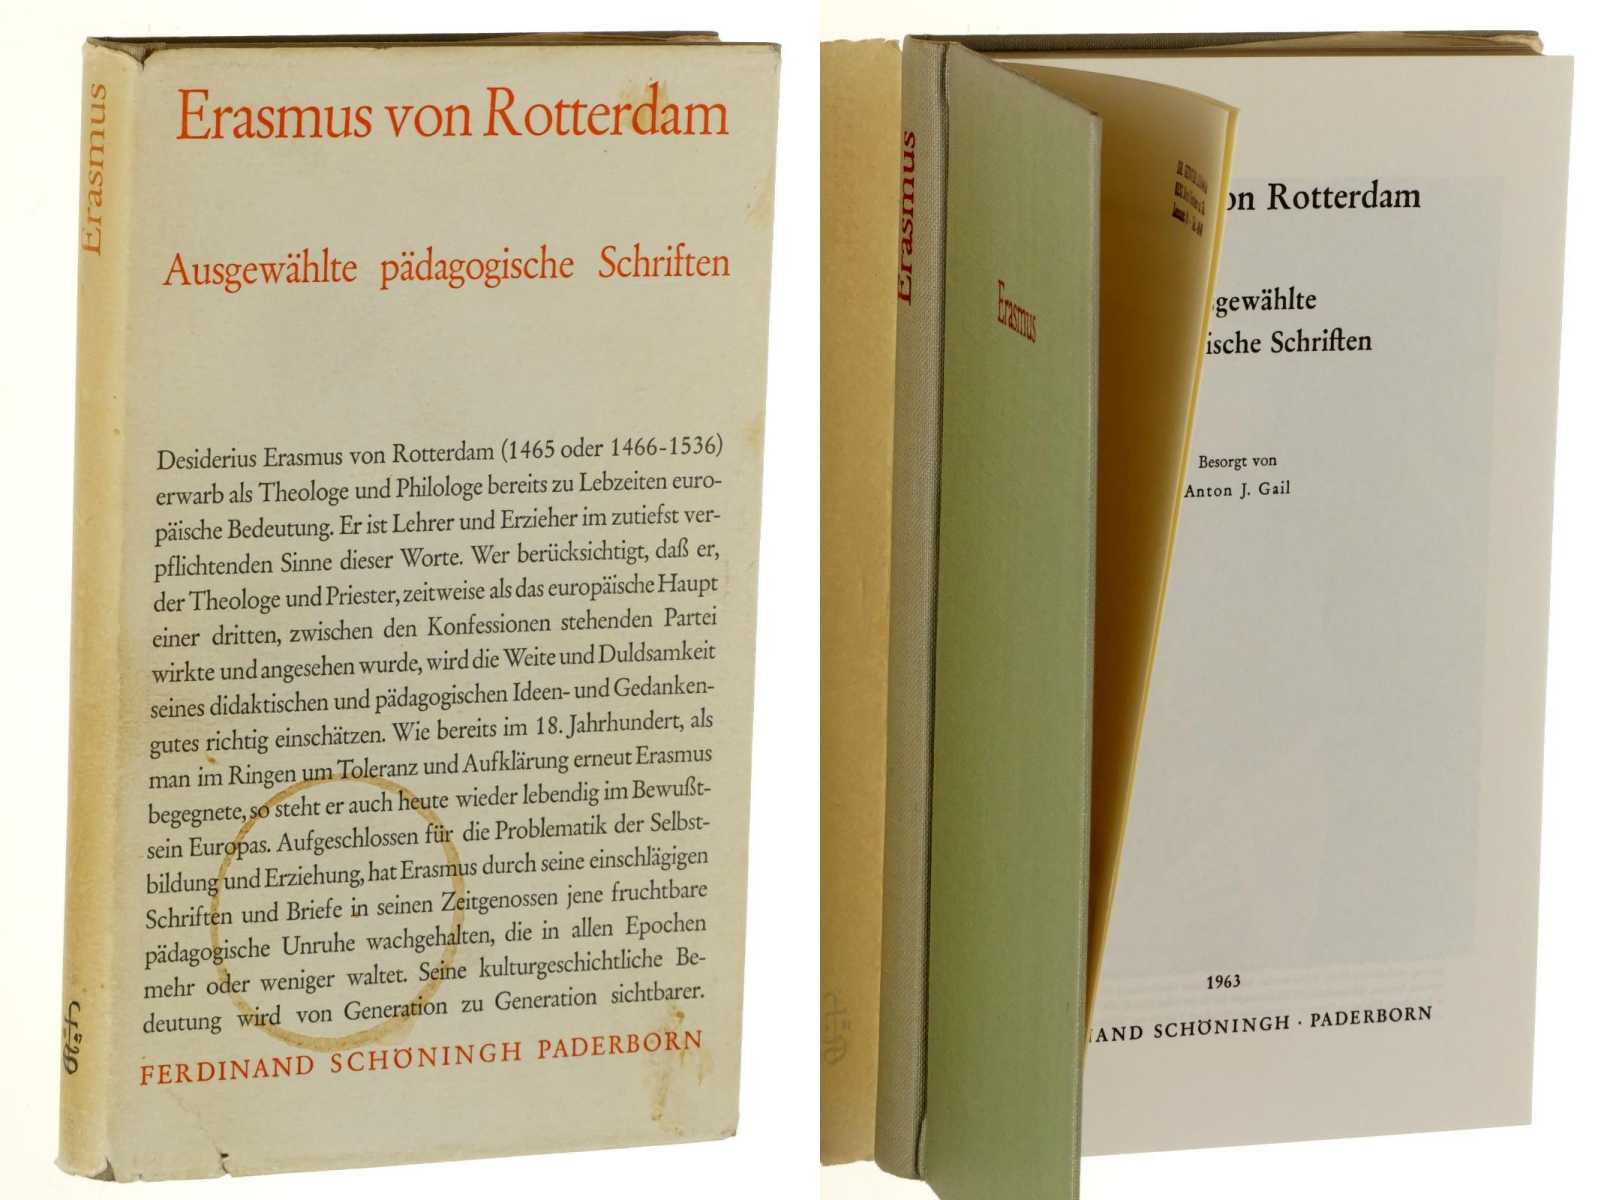 Erasmus von Rotterdam, Desiderius:  Ausgewählte pädagogische Schriften. 